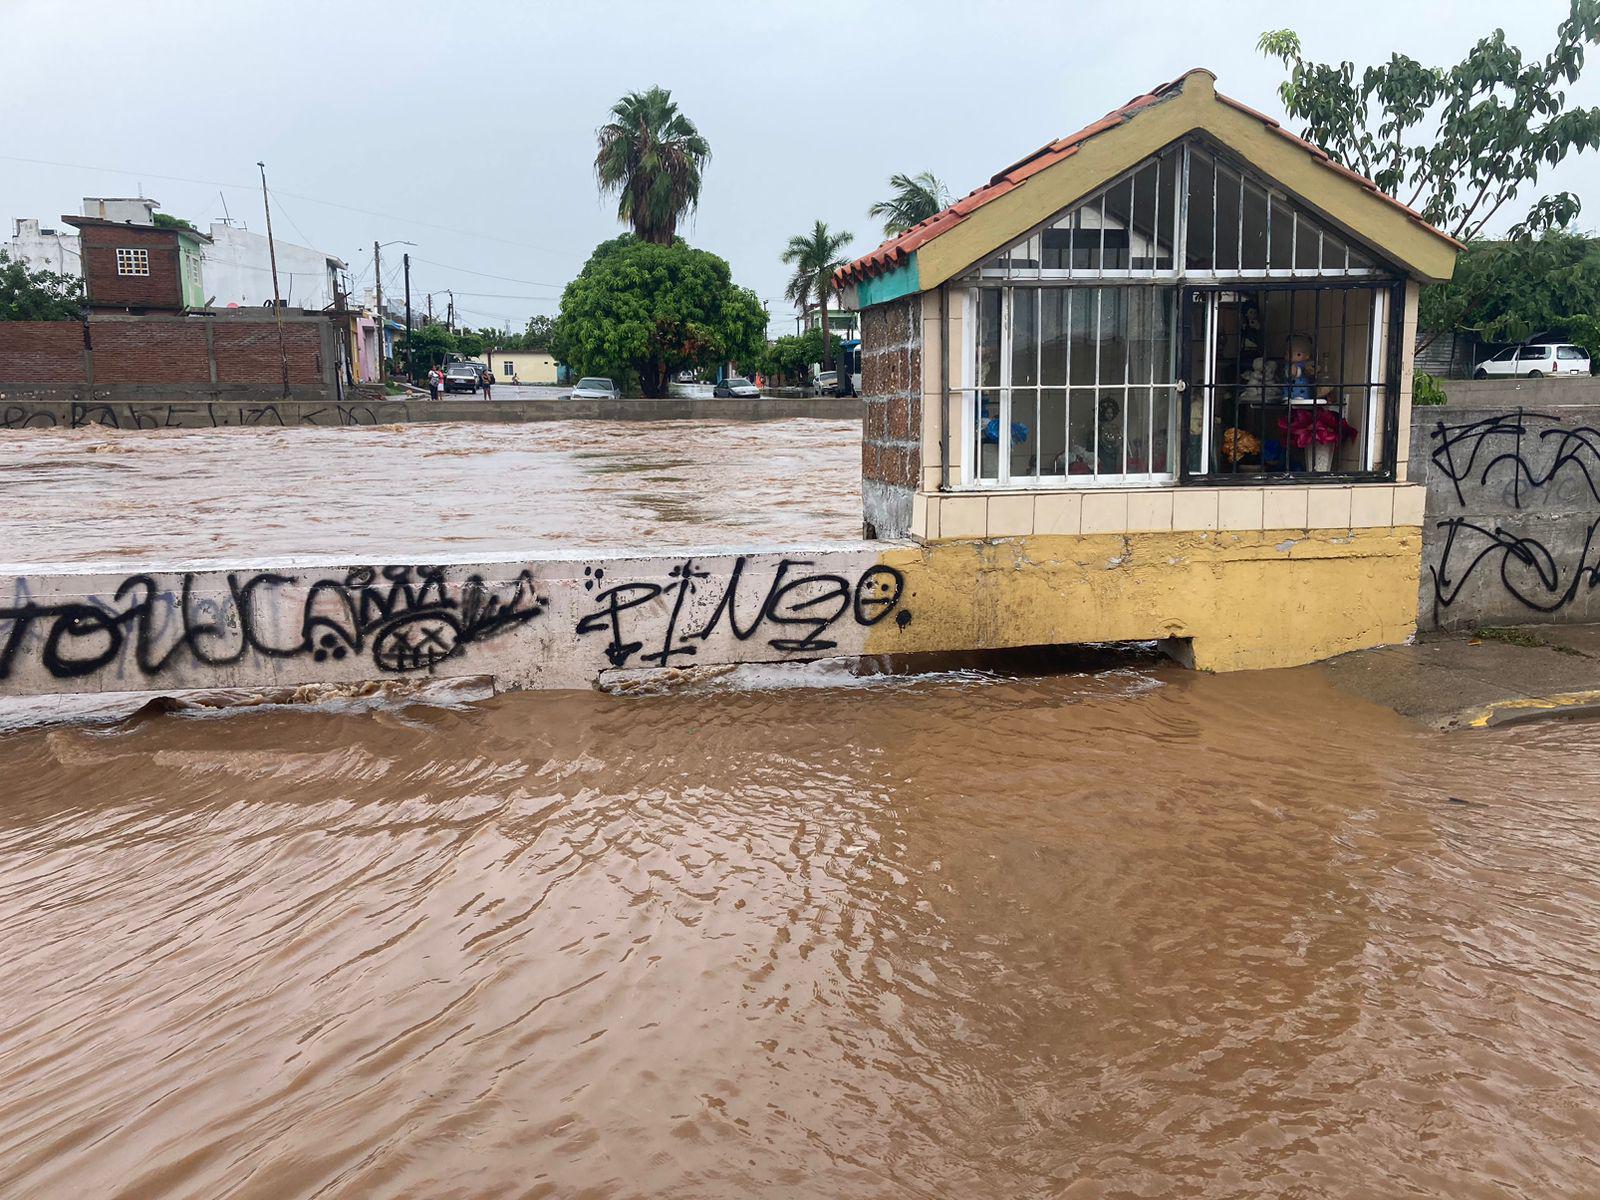 $!Se desborda el arroyo Jabalines en Mazatlán